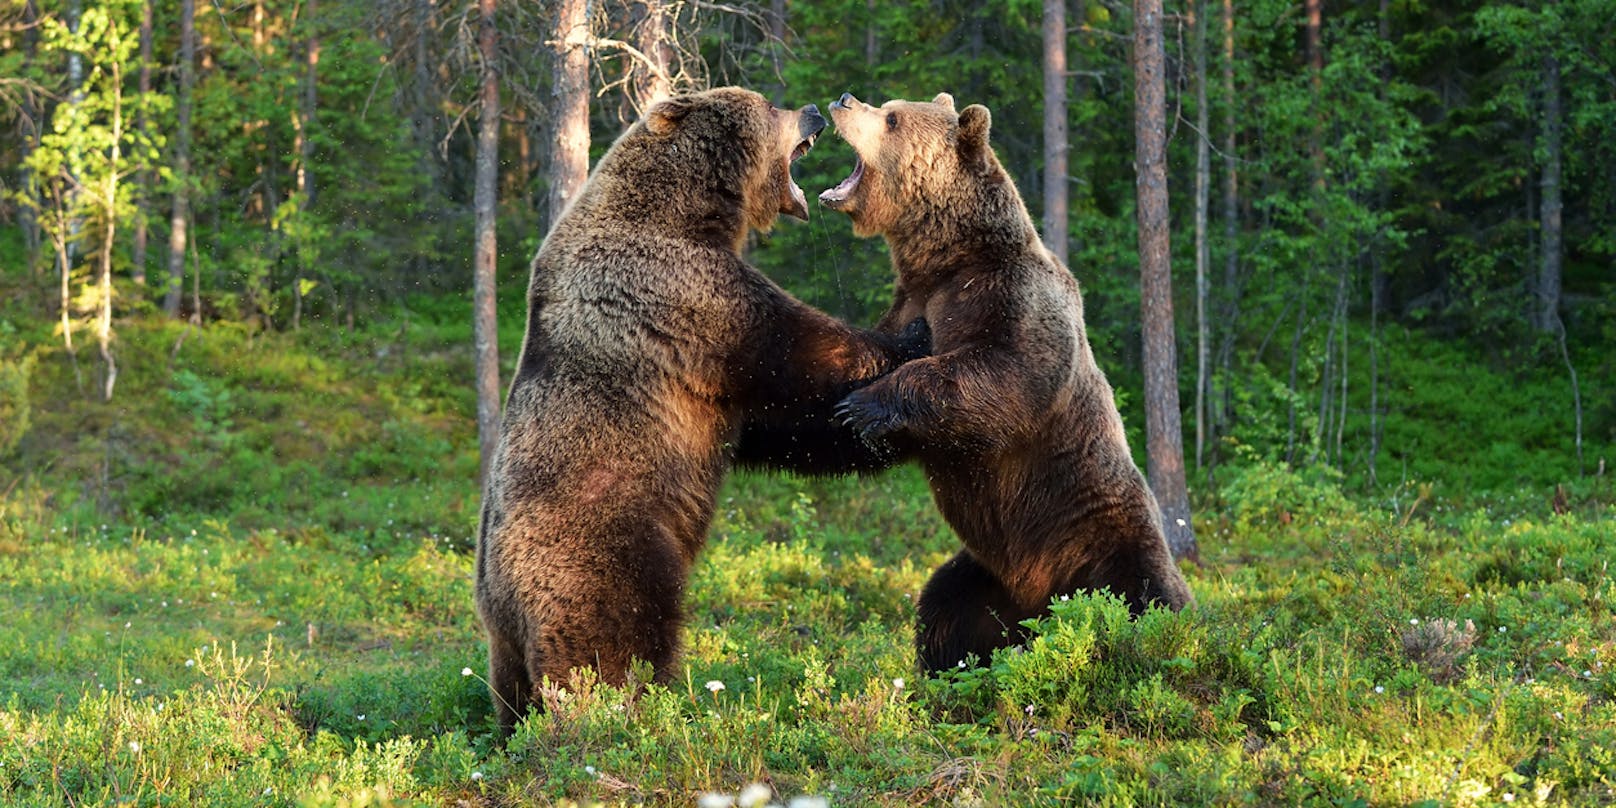 Der Bub wurde von zwei Bären attackiert und getötet.